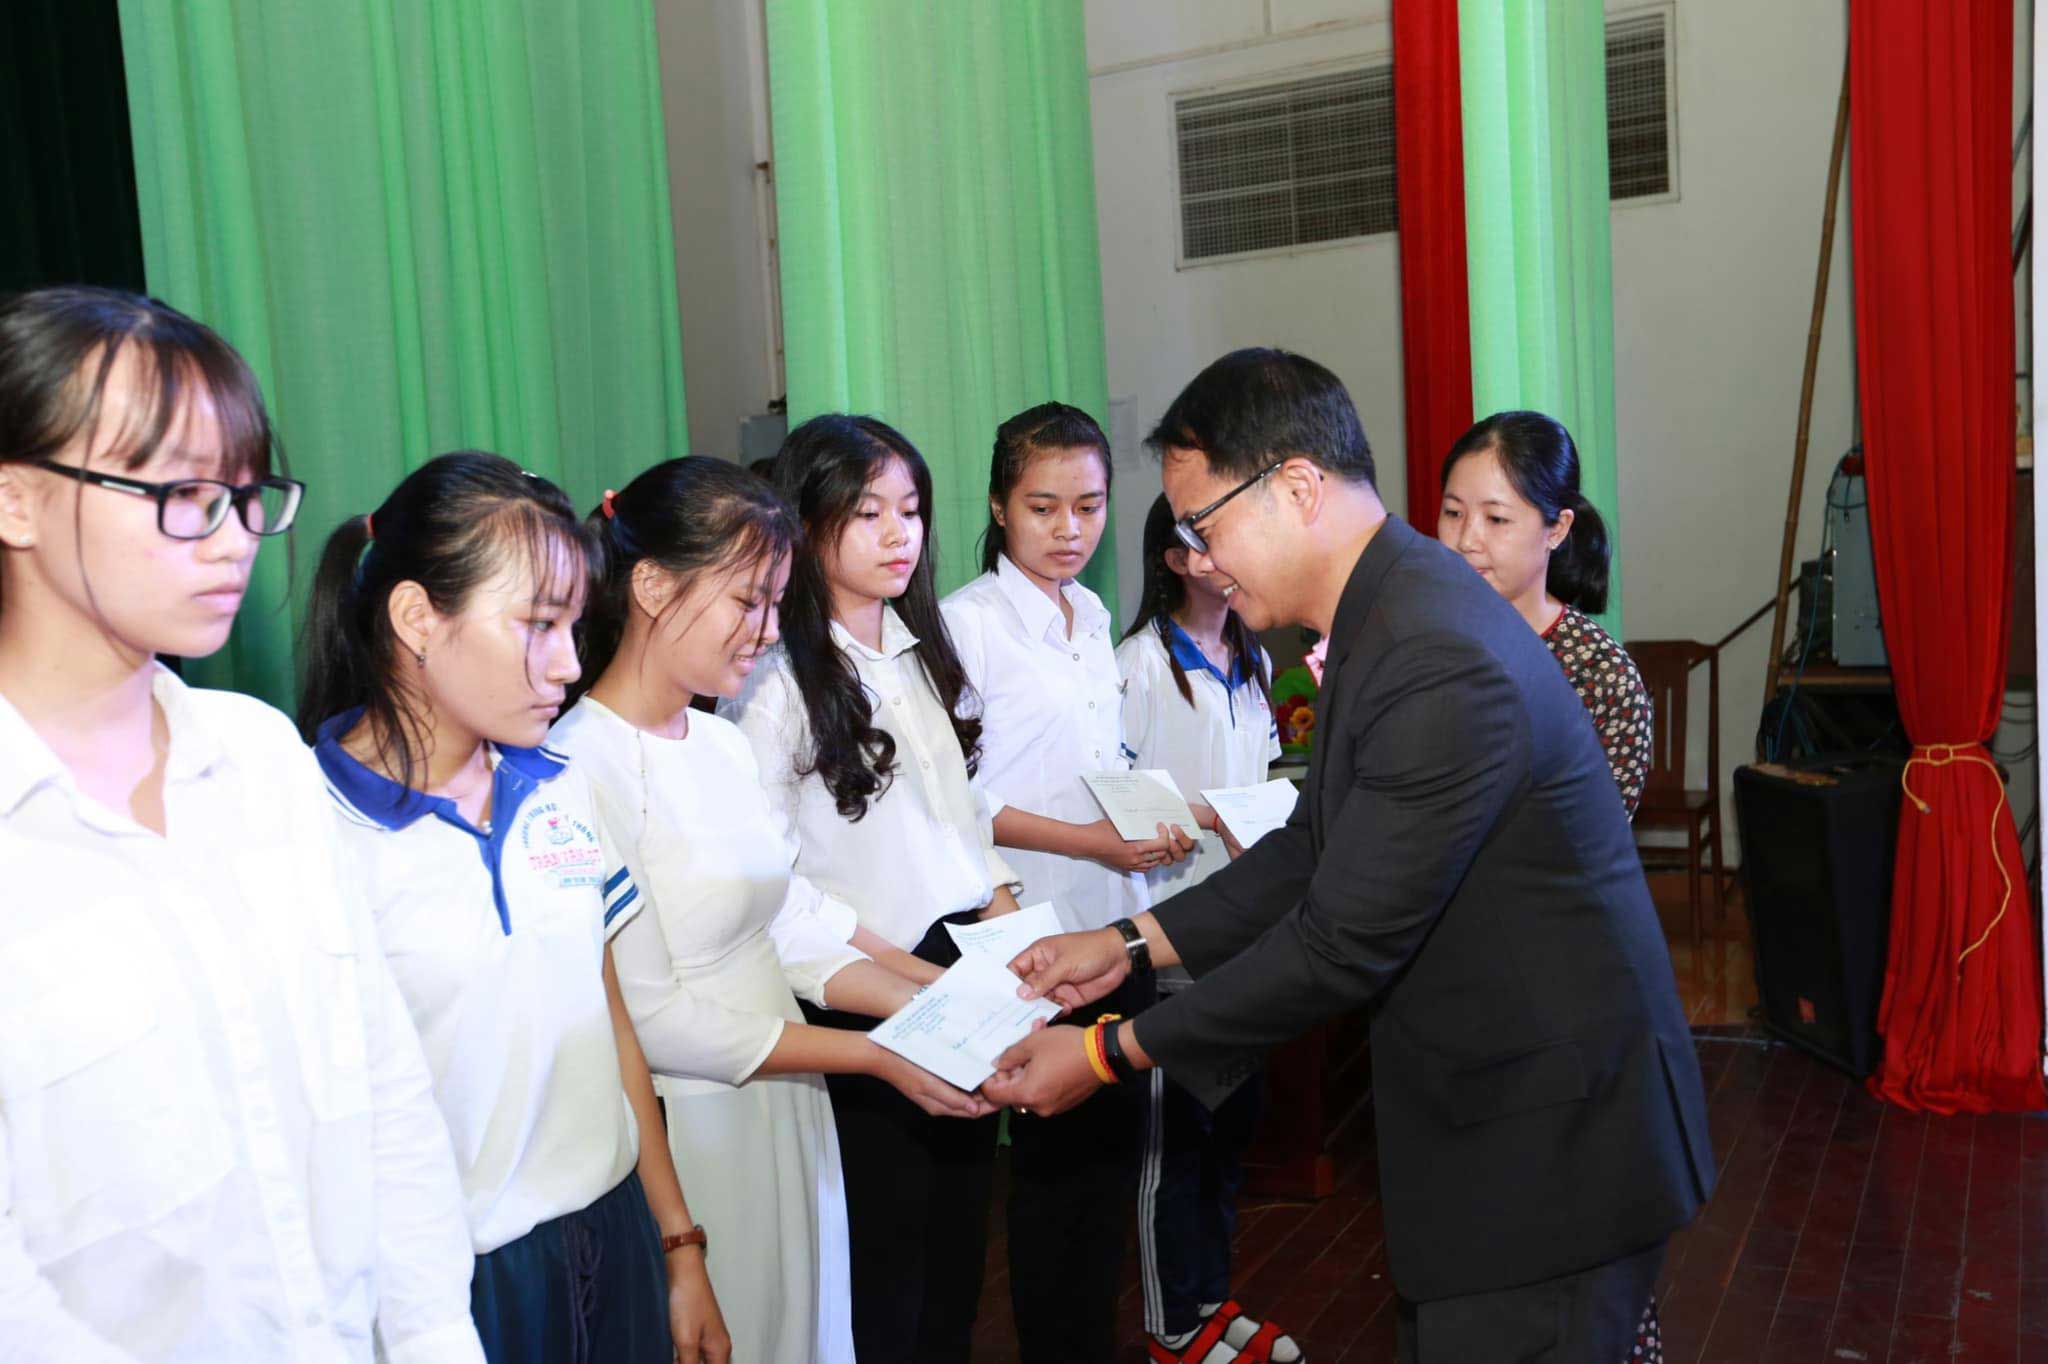 ซี.พี. เวียดนาม มอบทุนการศึกษาแก่ นร.- นศ. เวียดนาม ที่เรียนดีแต่ขาดแคลนทุนทรัพย์ ปี 2019